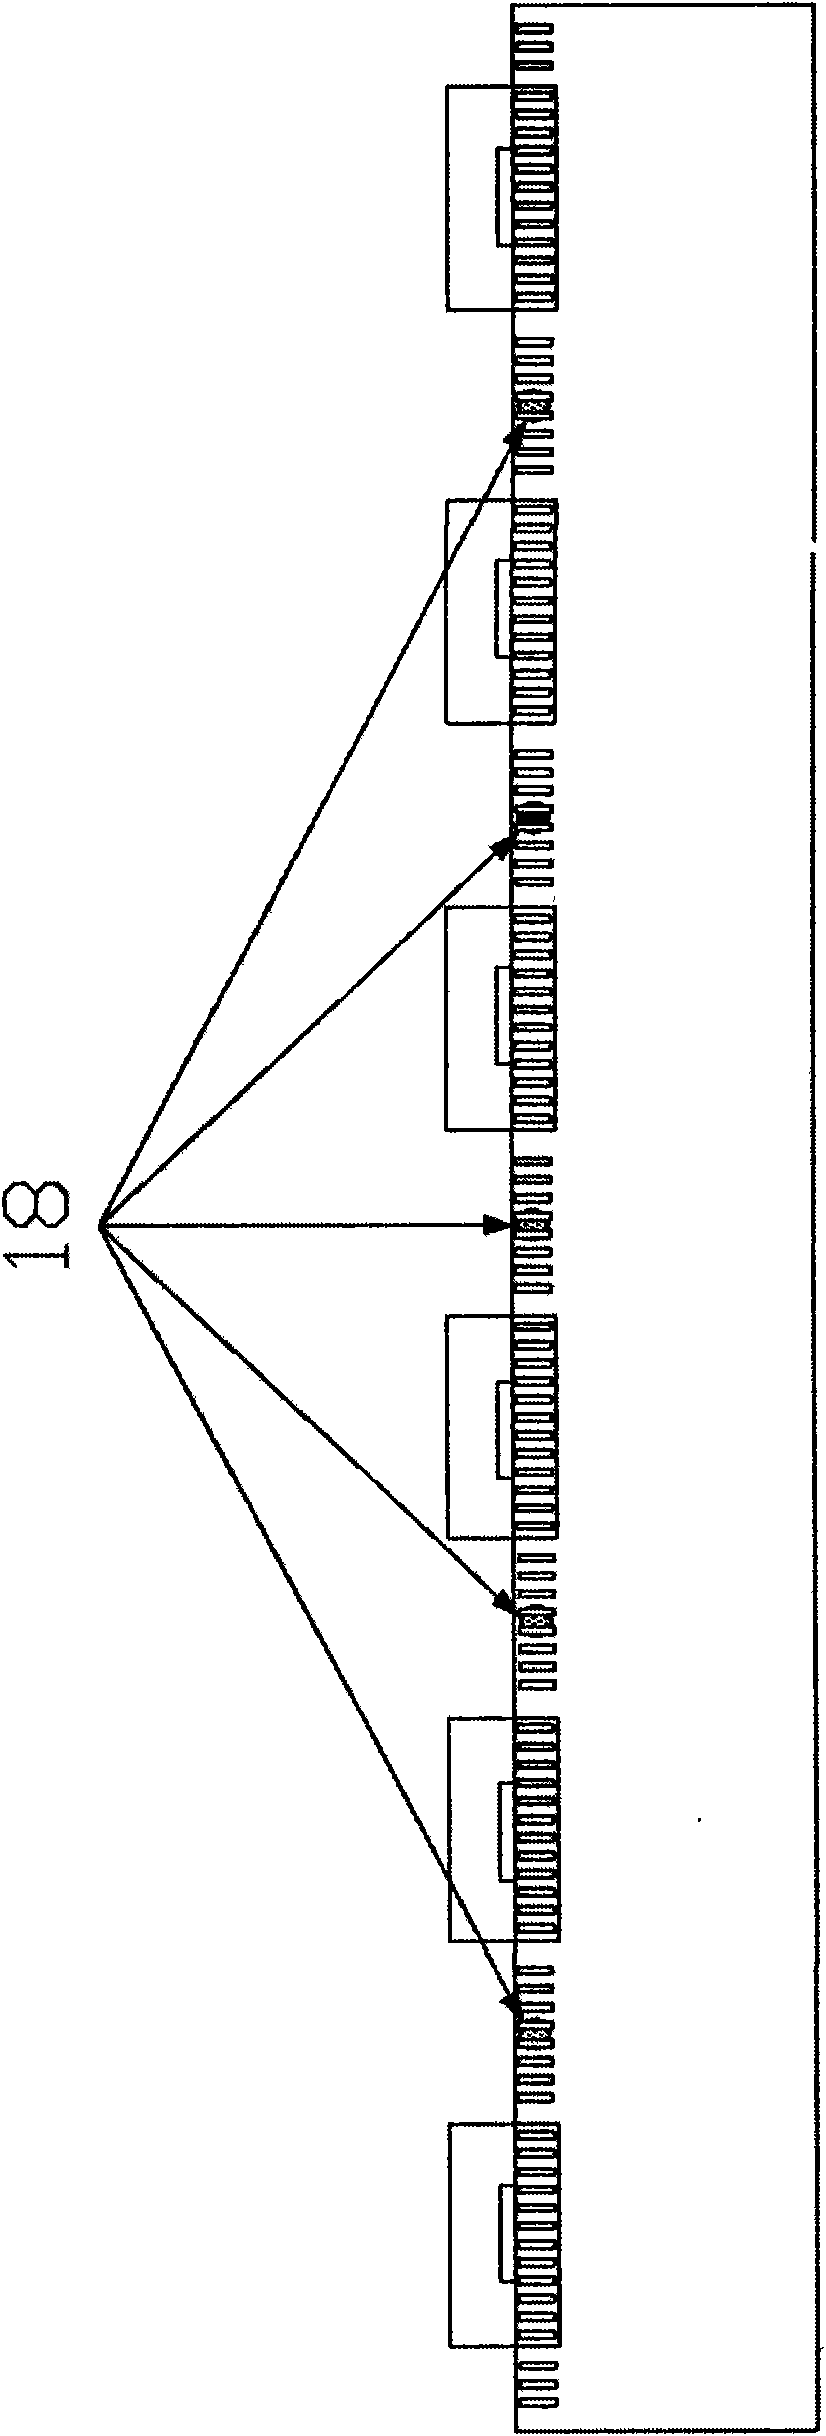 Backboard structure of backlight module